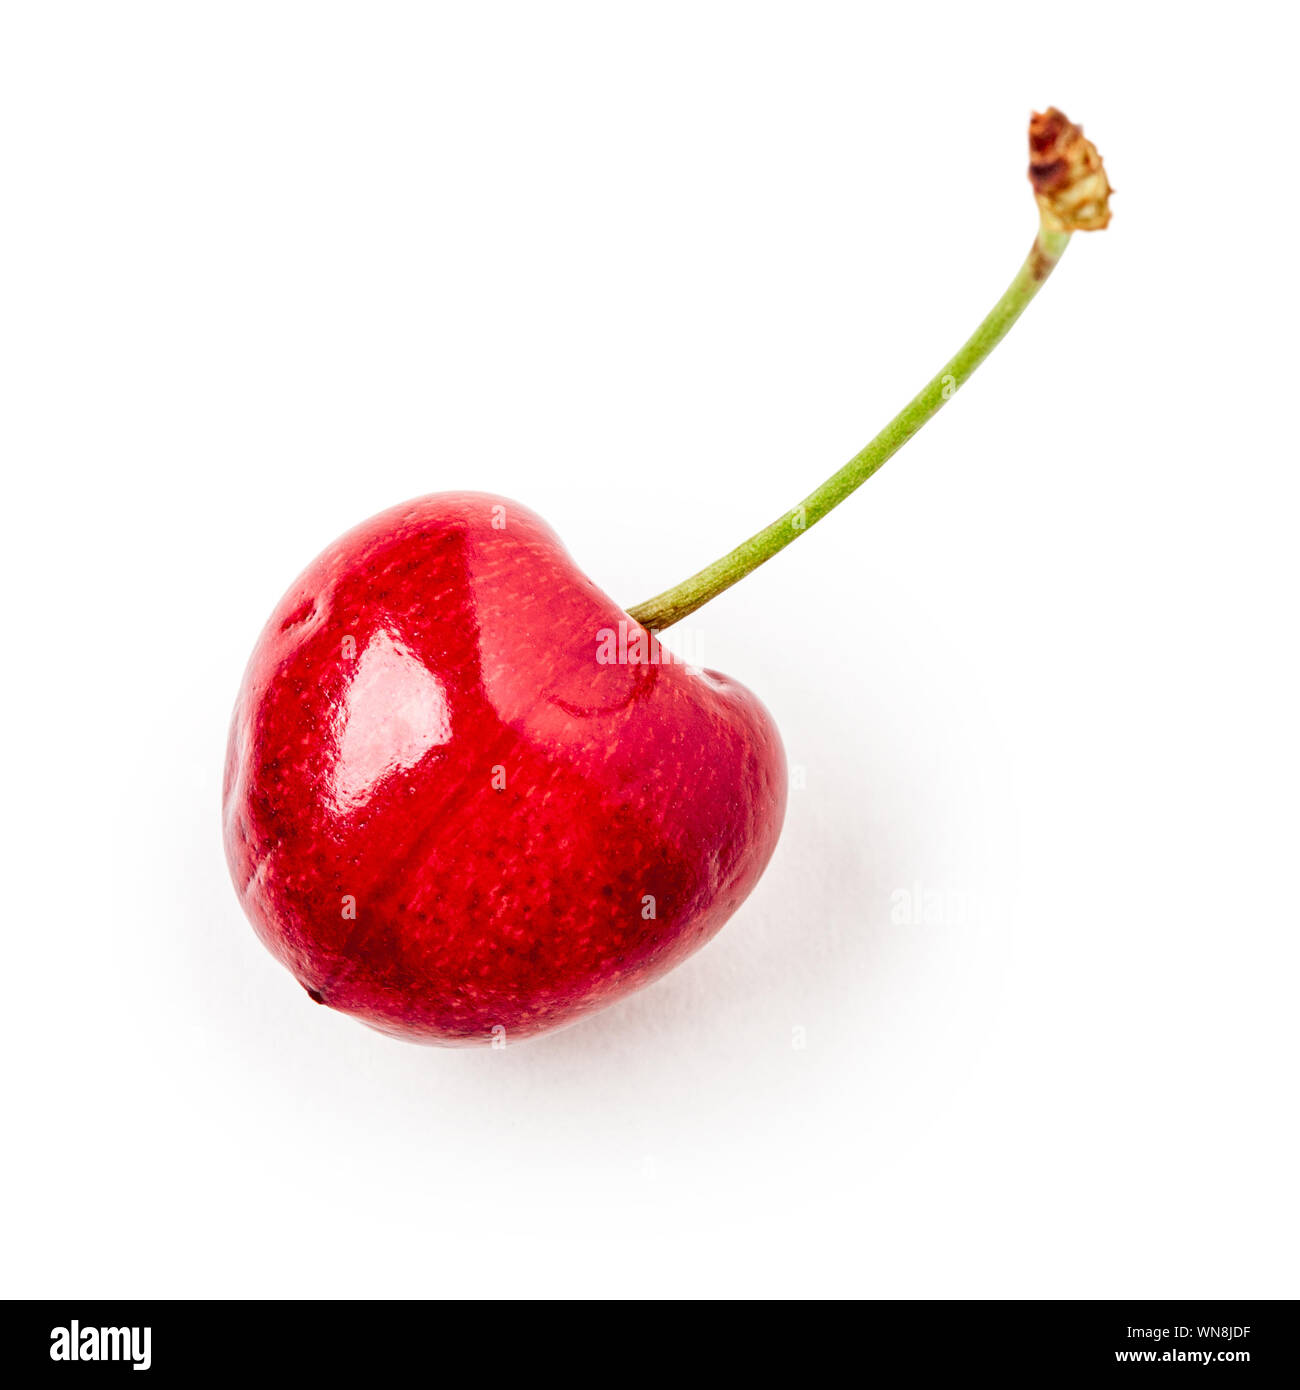 Cerise rouge isolé sur fond blanc avec chemin de détourage. La saine alimentation et les régimes amaigrissants concept. Fruits et baies d'été. Objet unique, top vi Banque D'Images